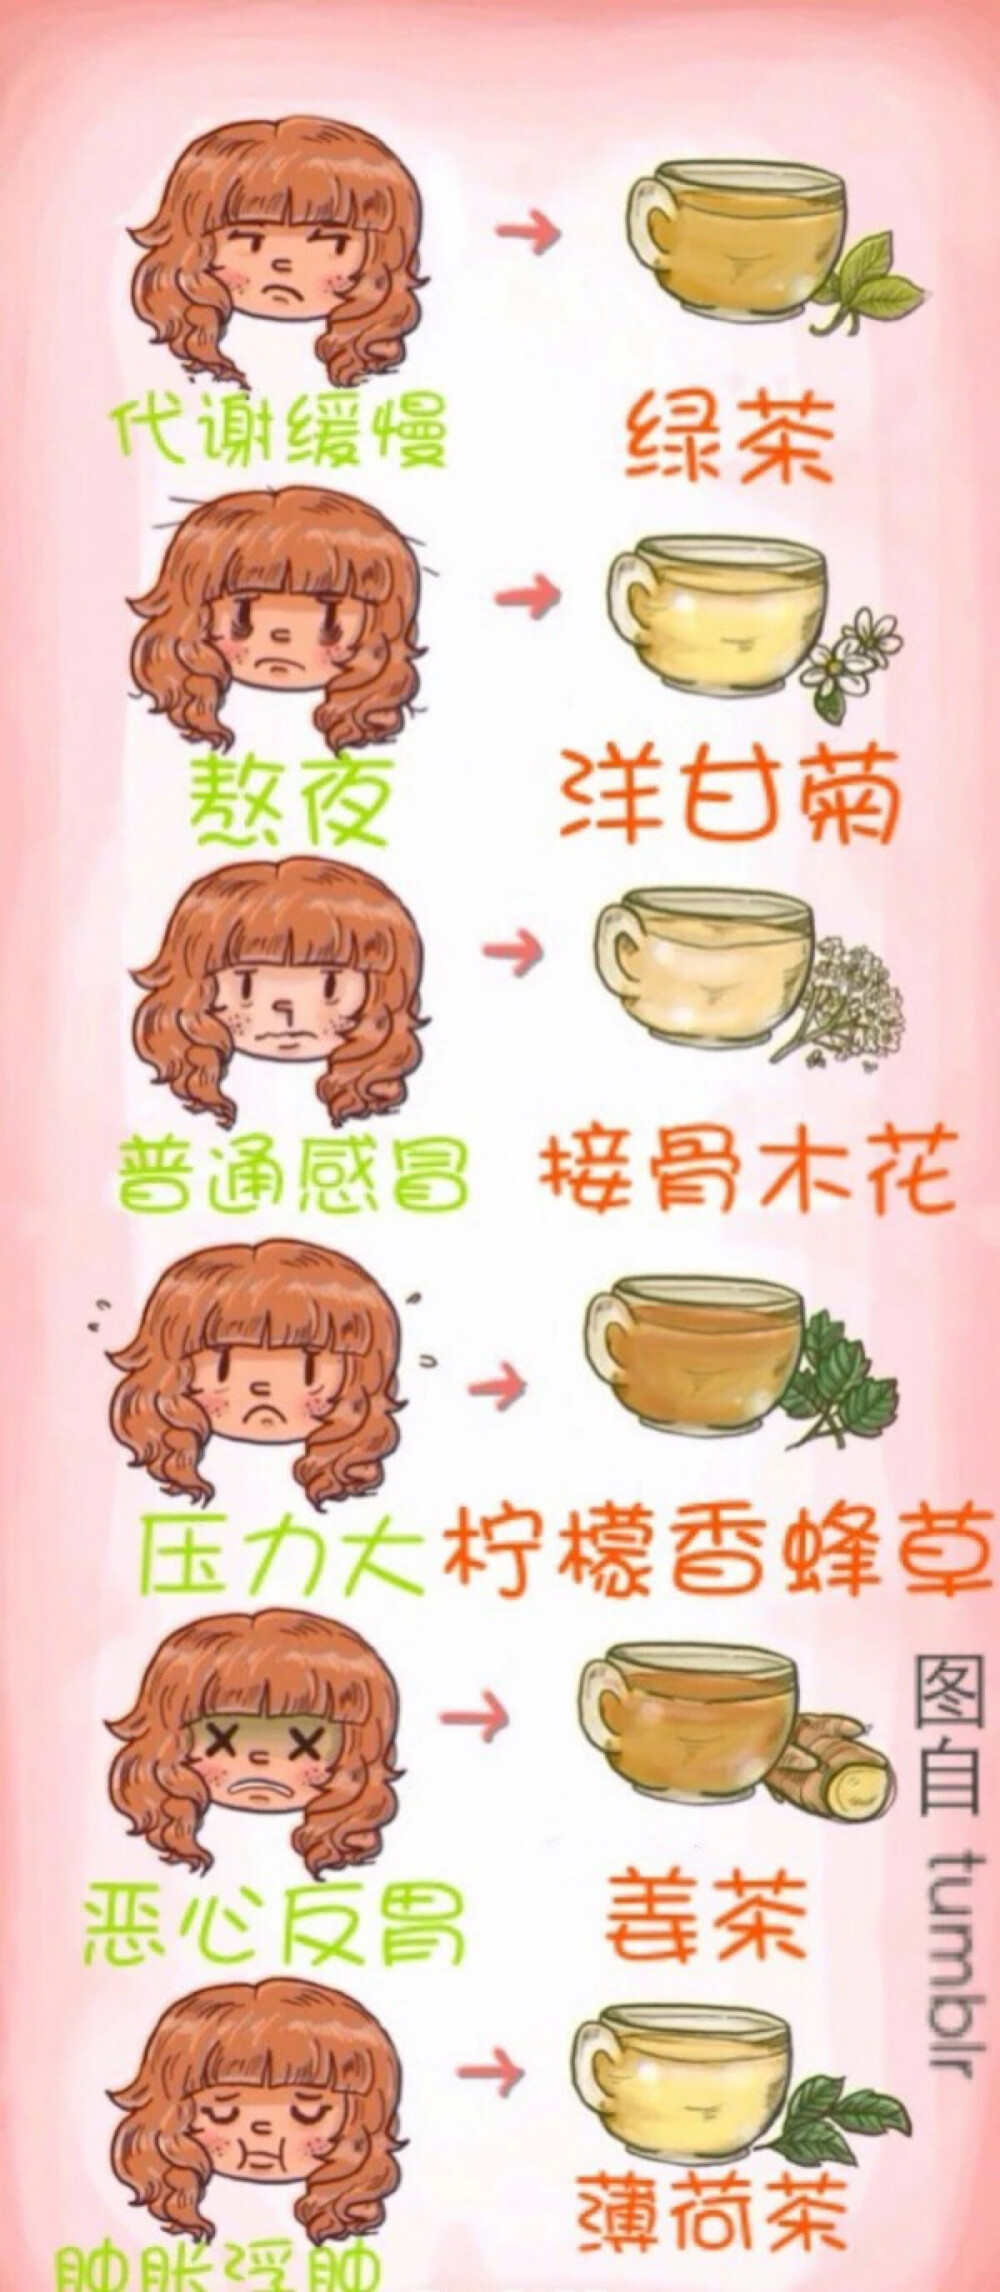 各种花茶对应适应的症状